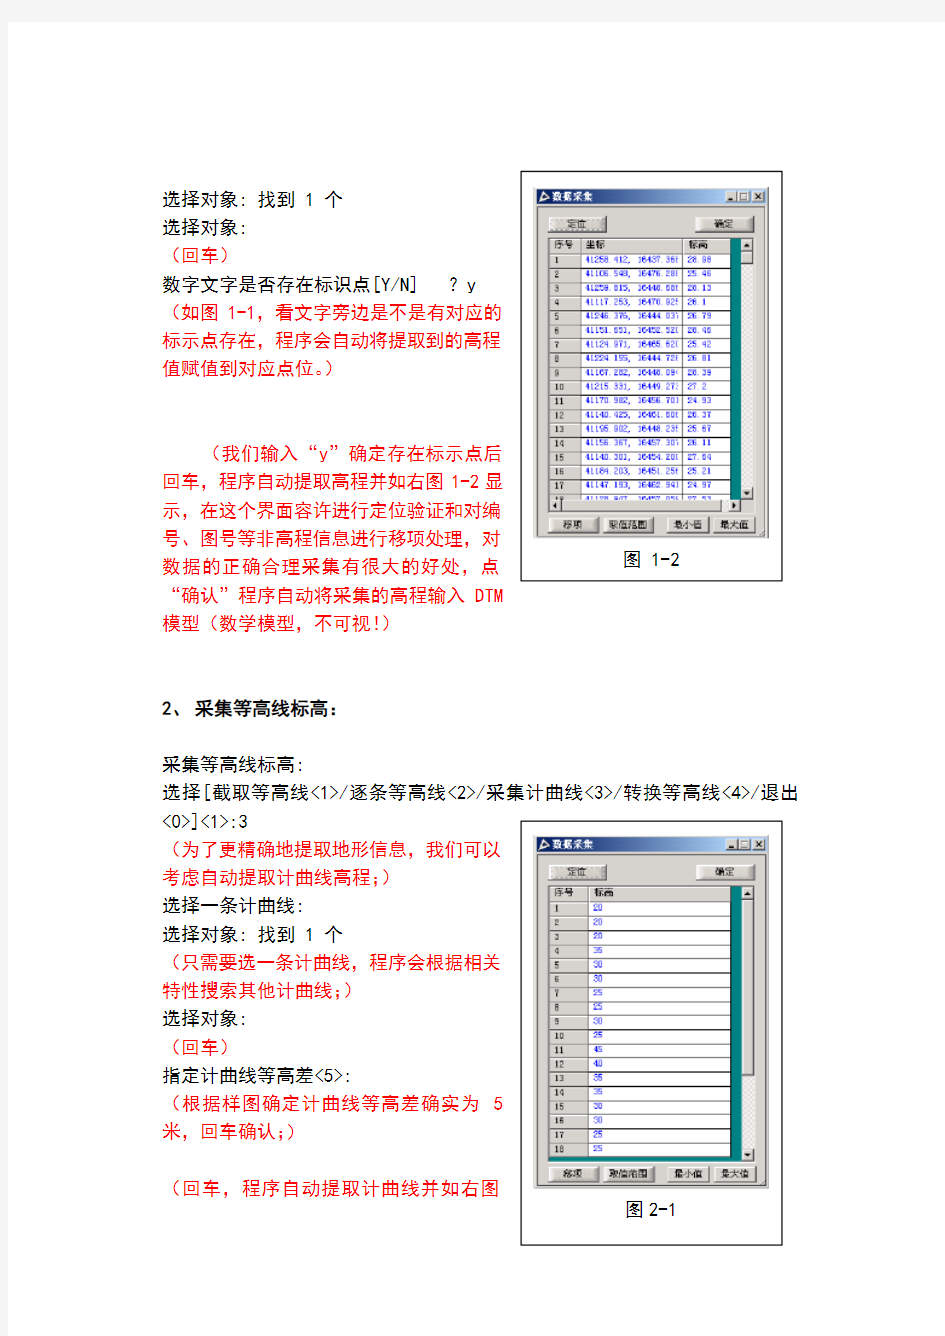 土方工程量计算软件htcad简易操作手册